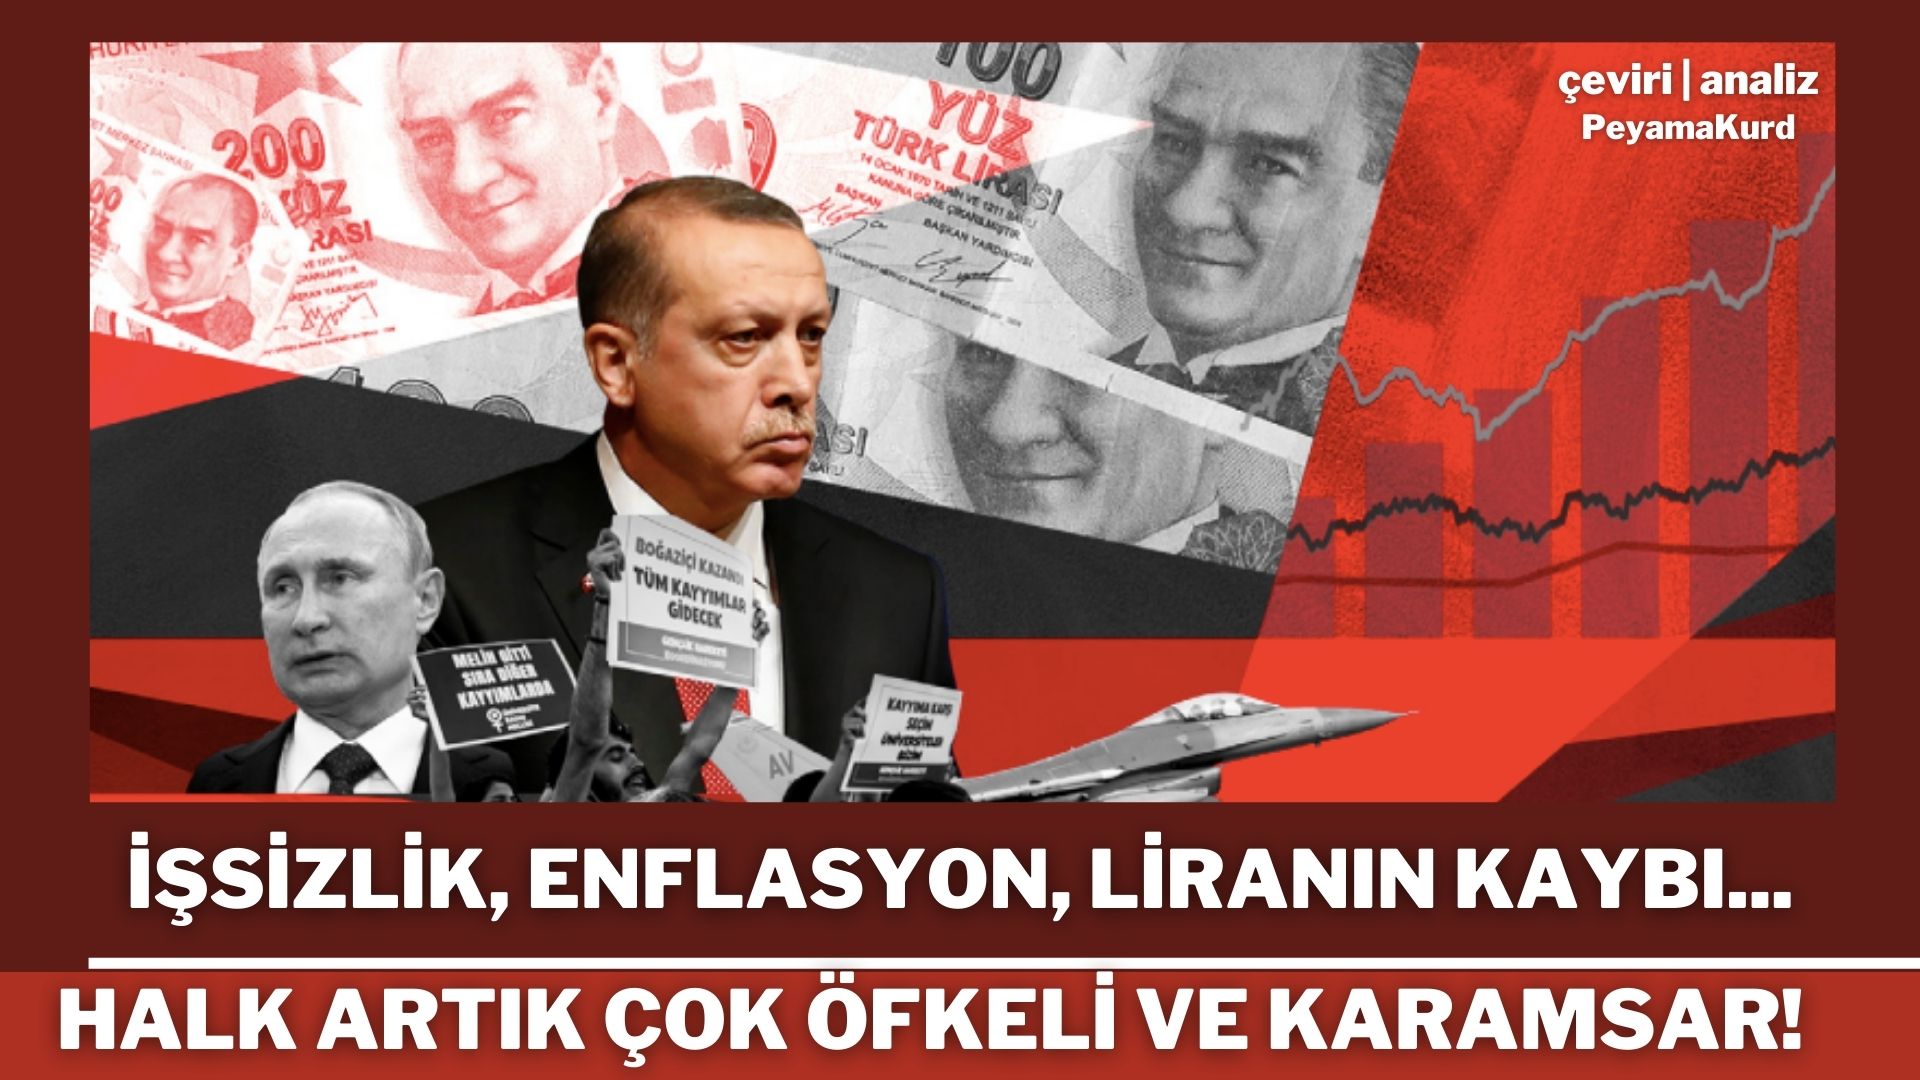 Erdoğan'ın hedefi 2023: Ama önlemlerin hiçbiri kanamayı durduramayacak!